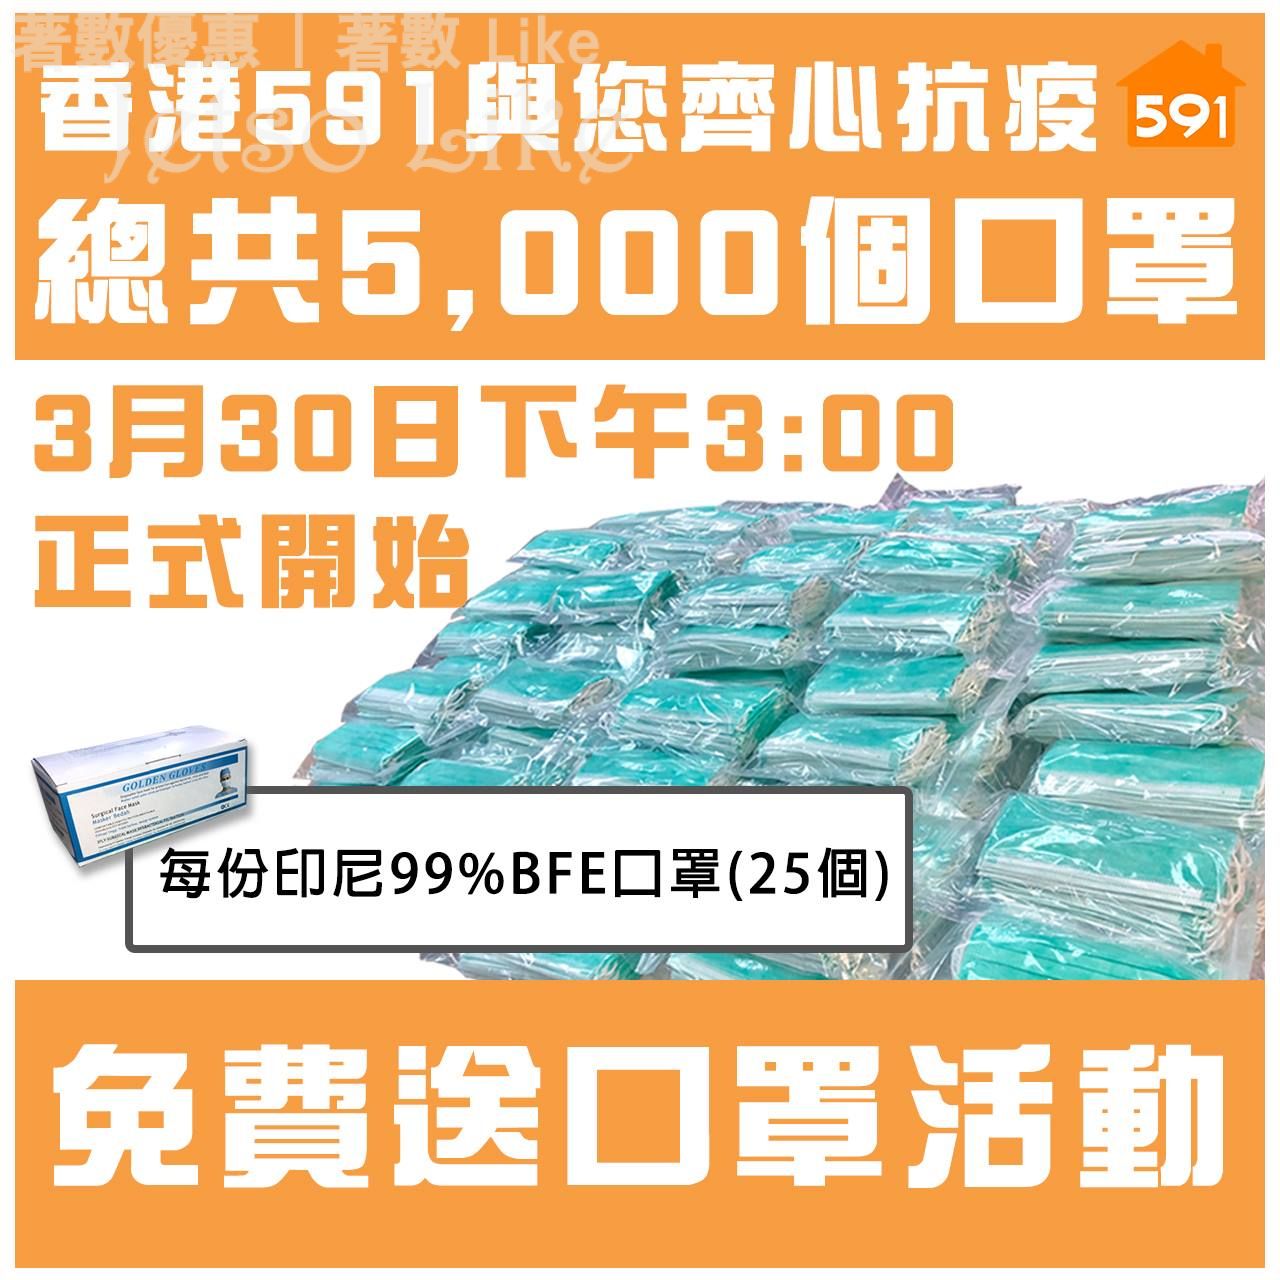 香港591房屋交易網 免費送出 5,000個 口罩